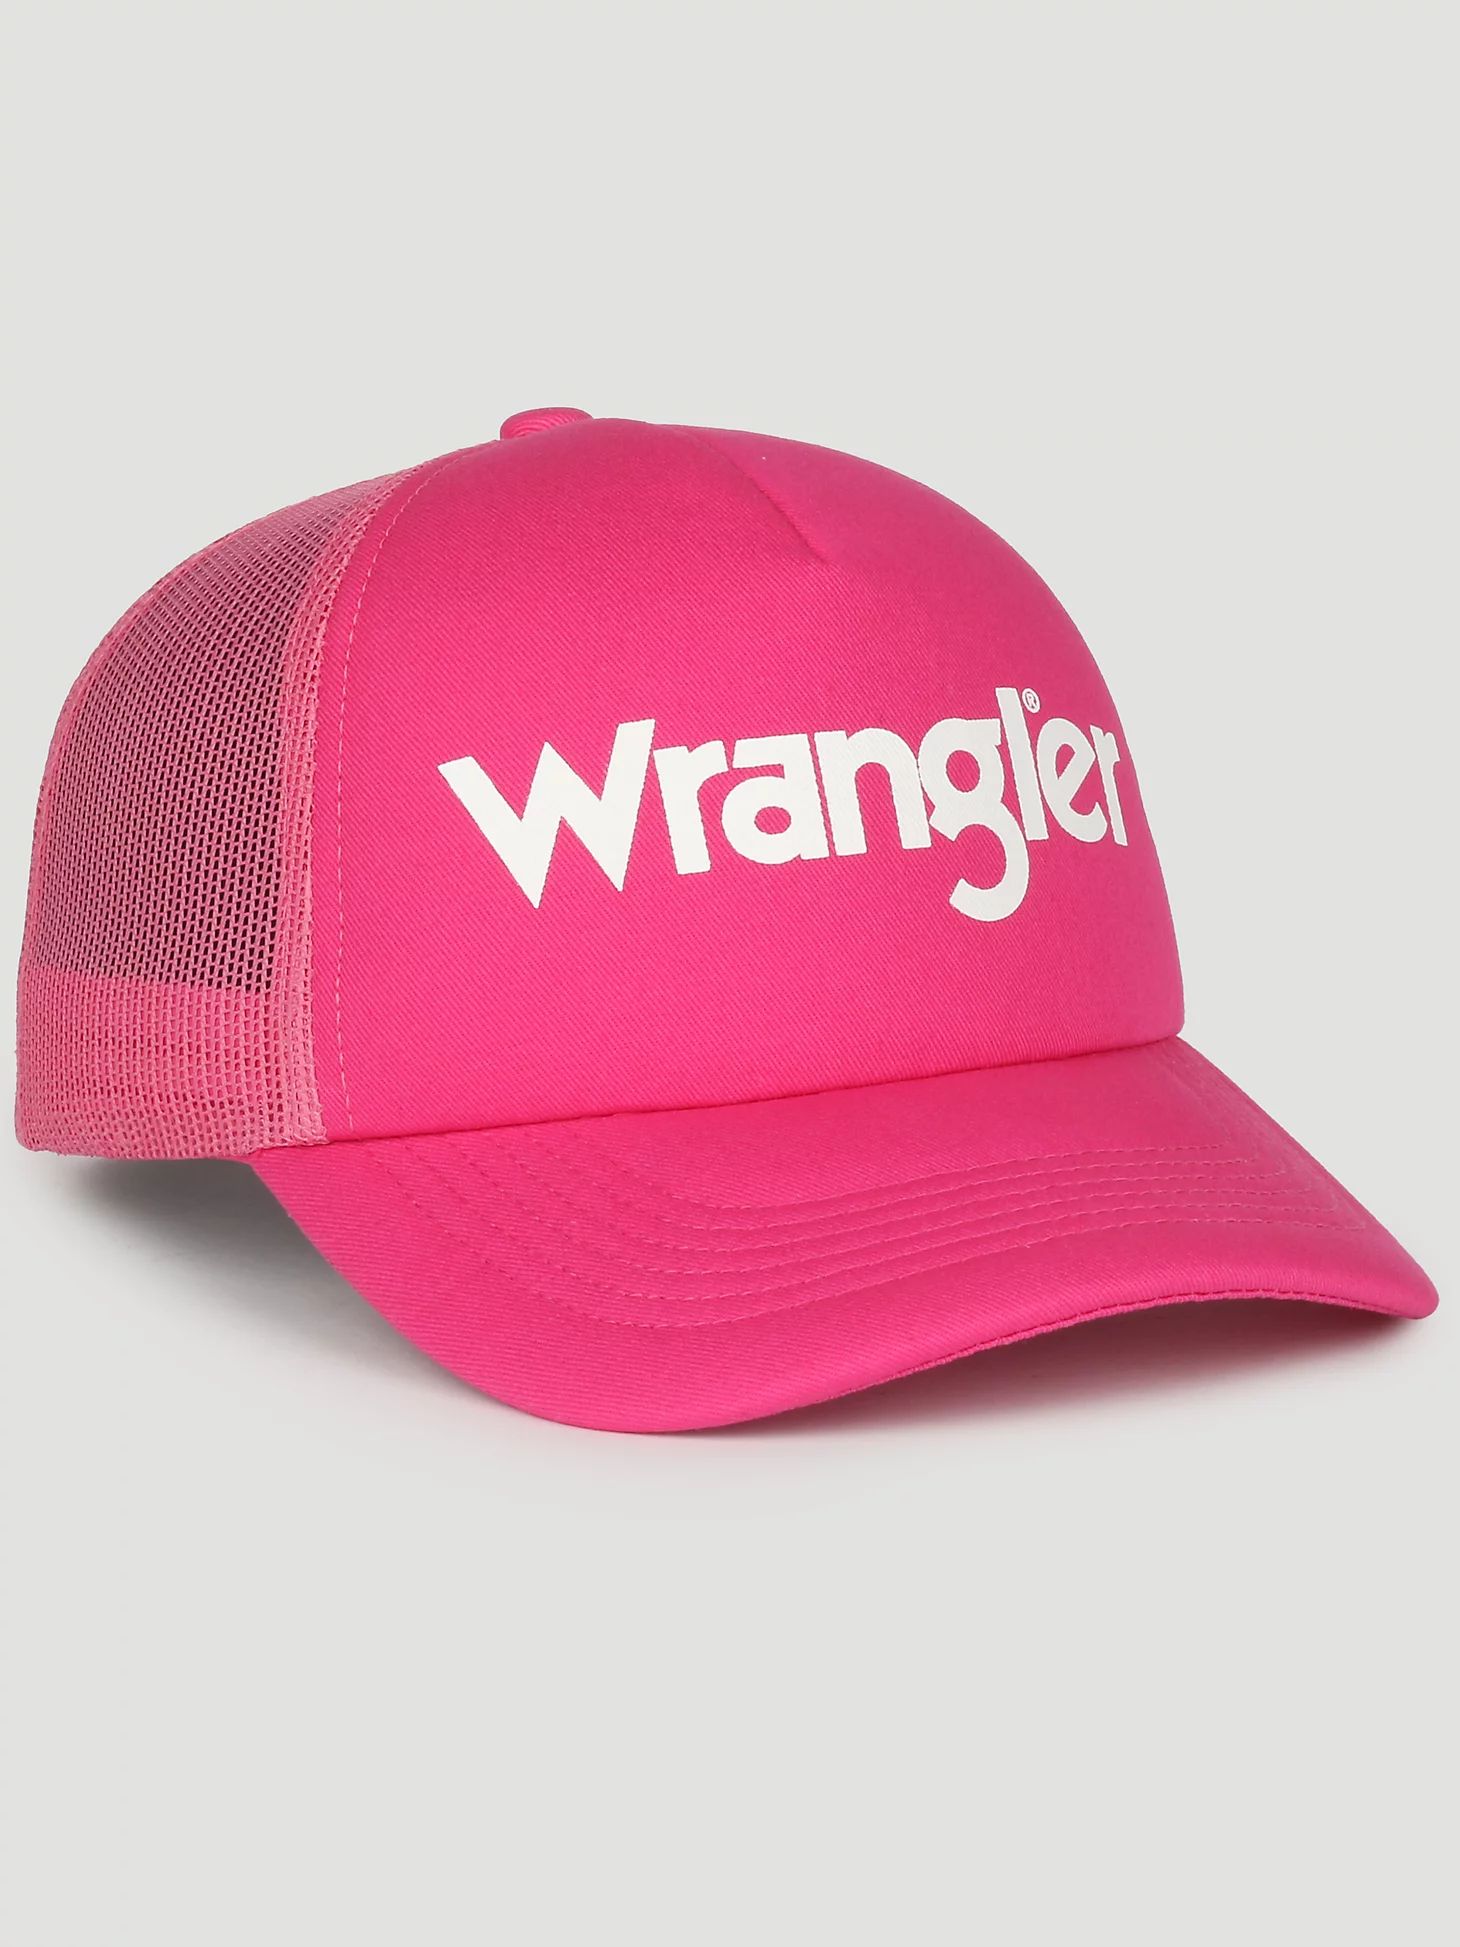 Wrangler Logo Baseball Cap in Pink | Wrangler